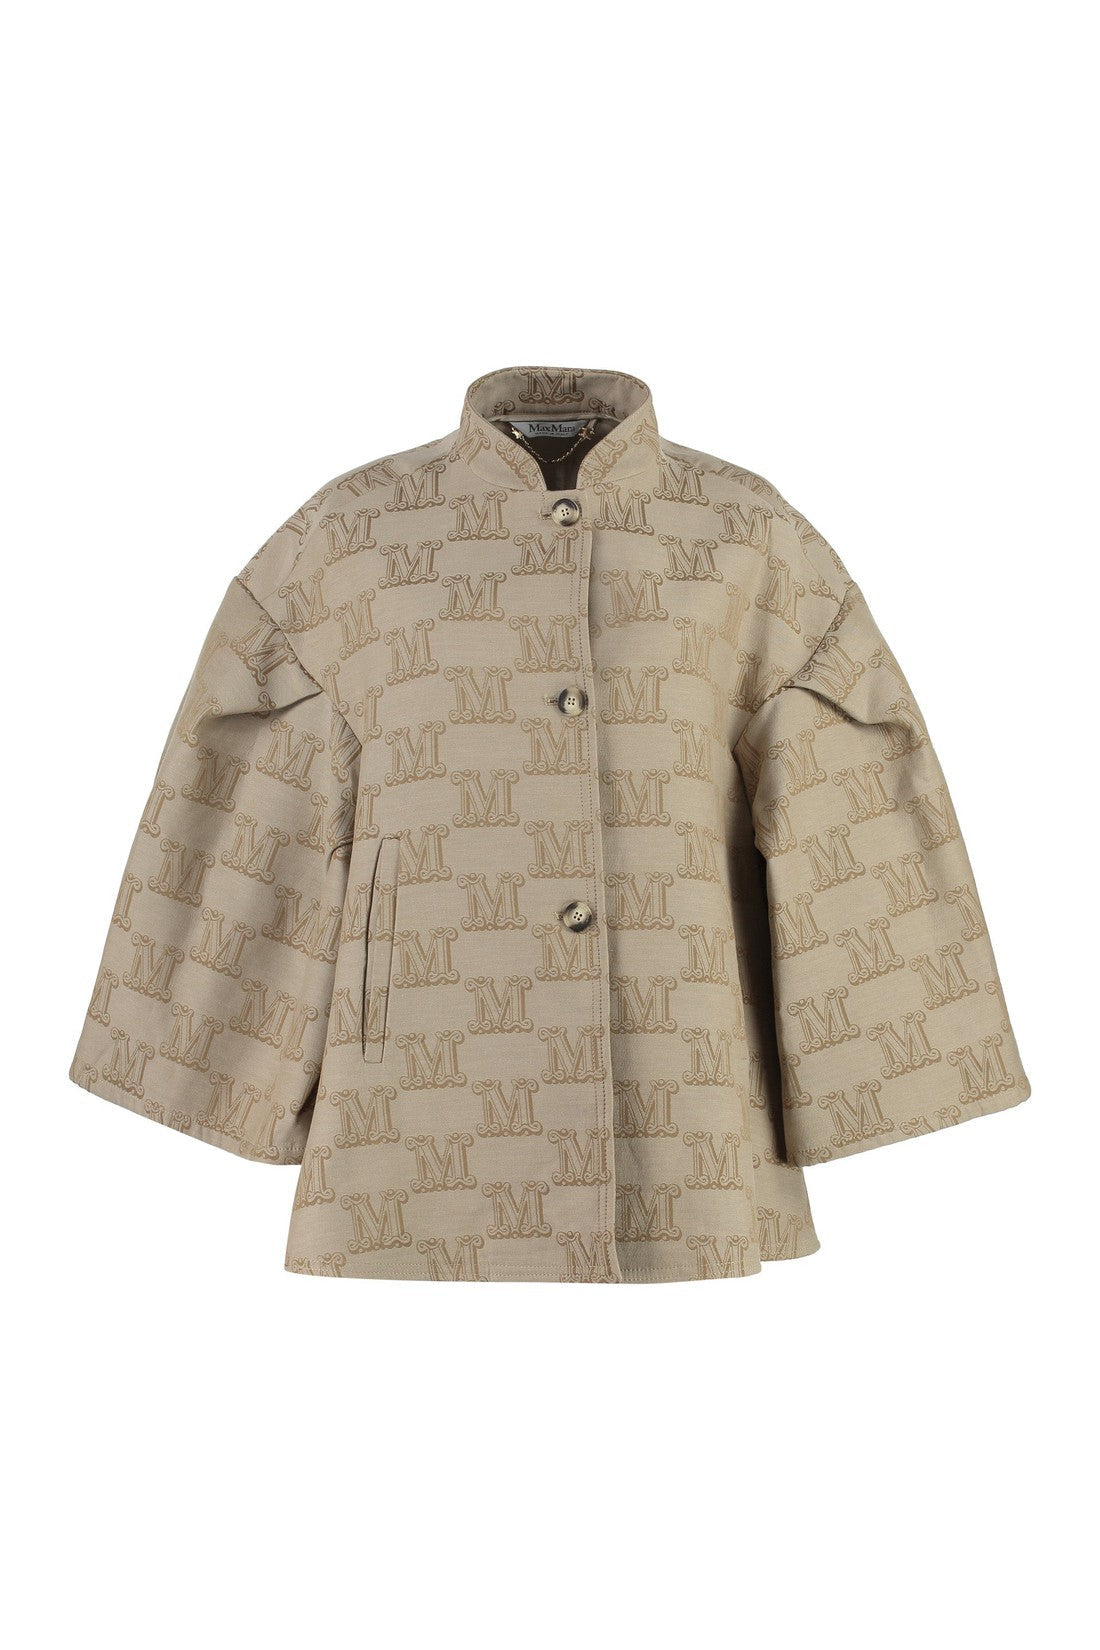 Max Mara-OUTLET-SALE-Cotton cape coat-ARCHIVIST